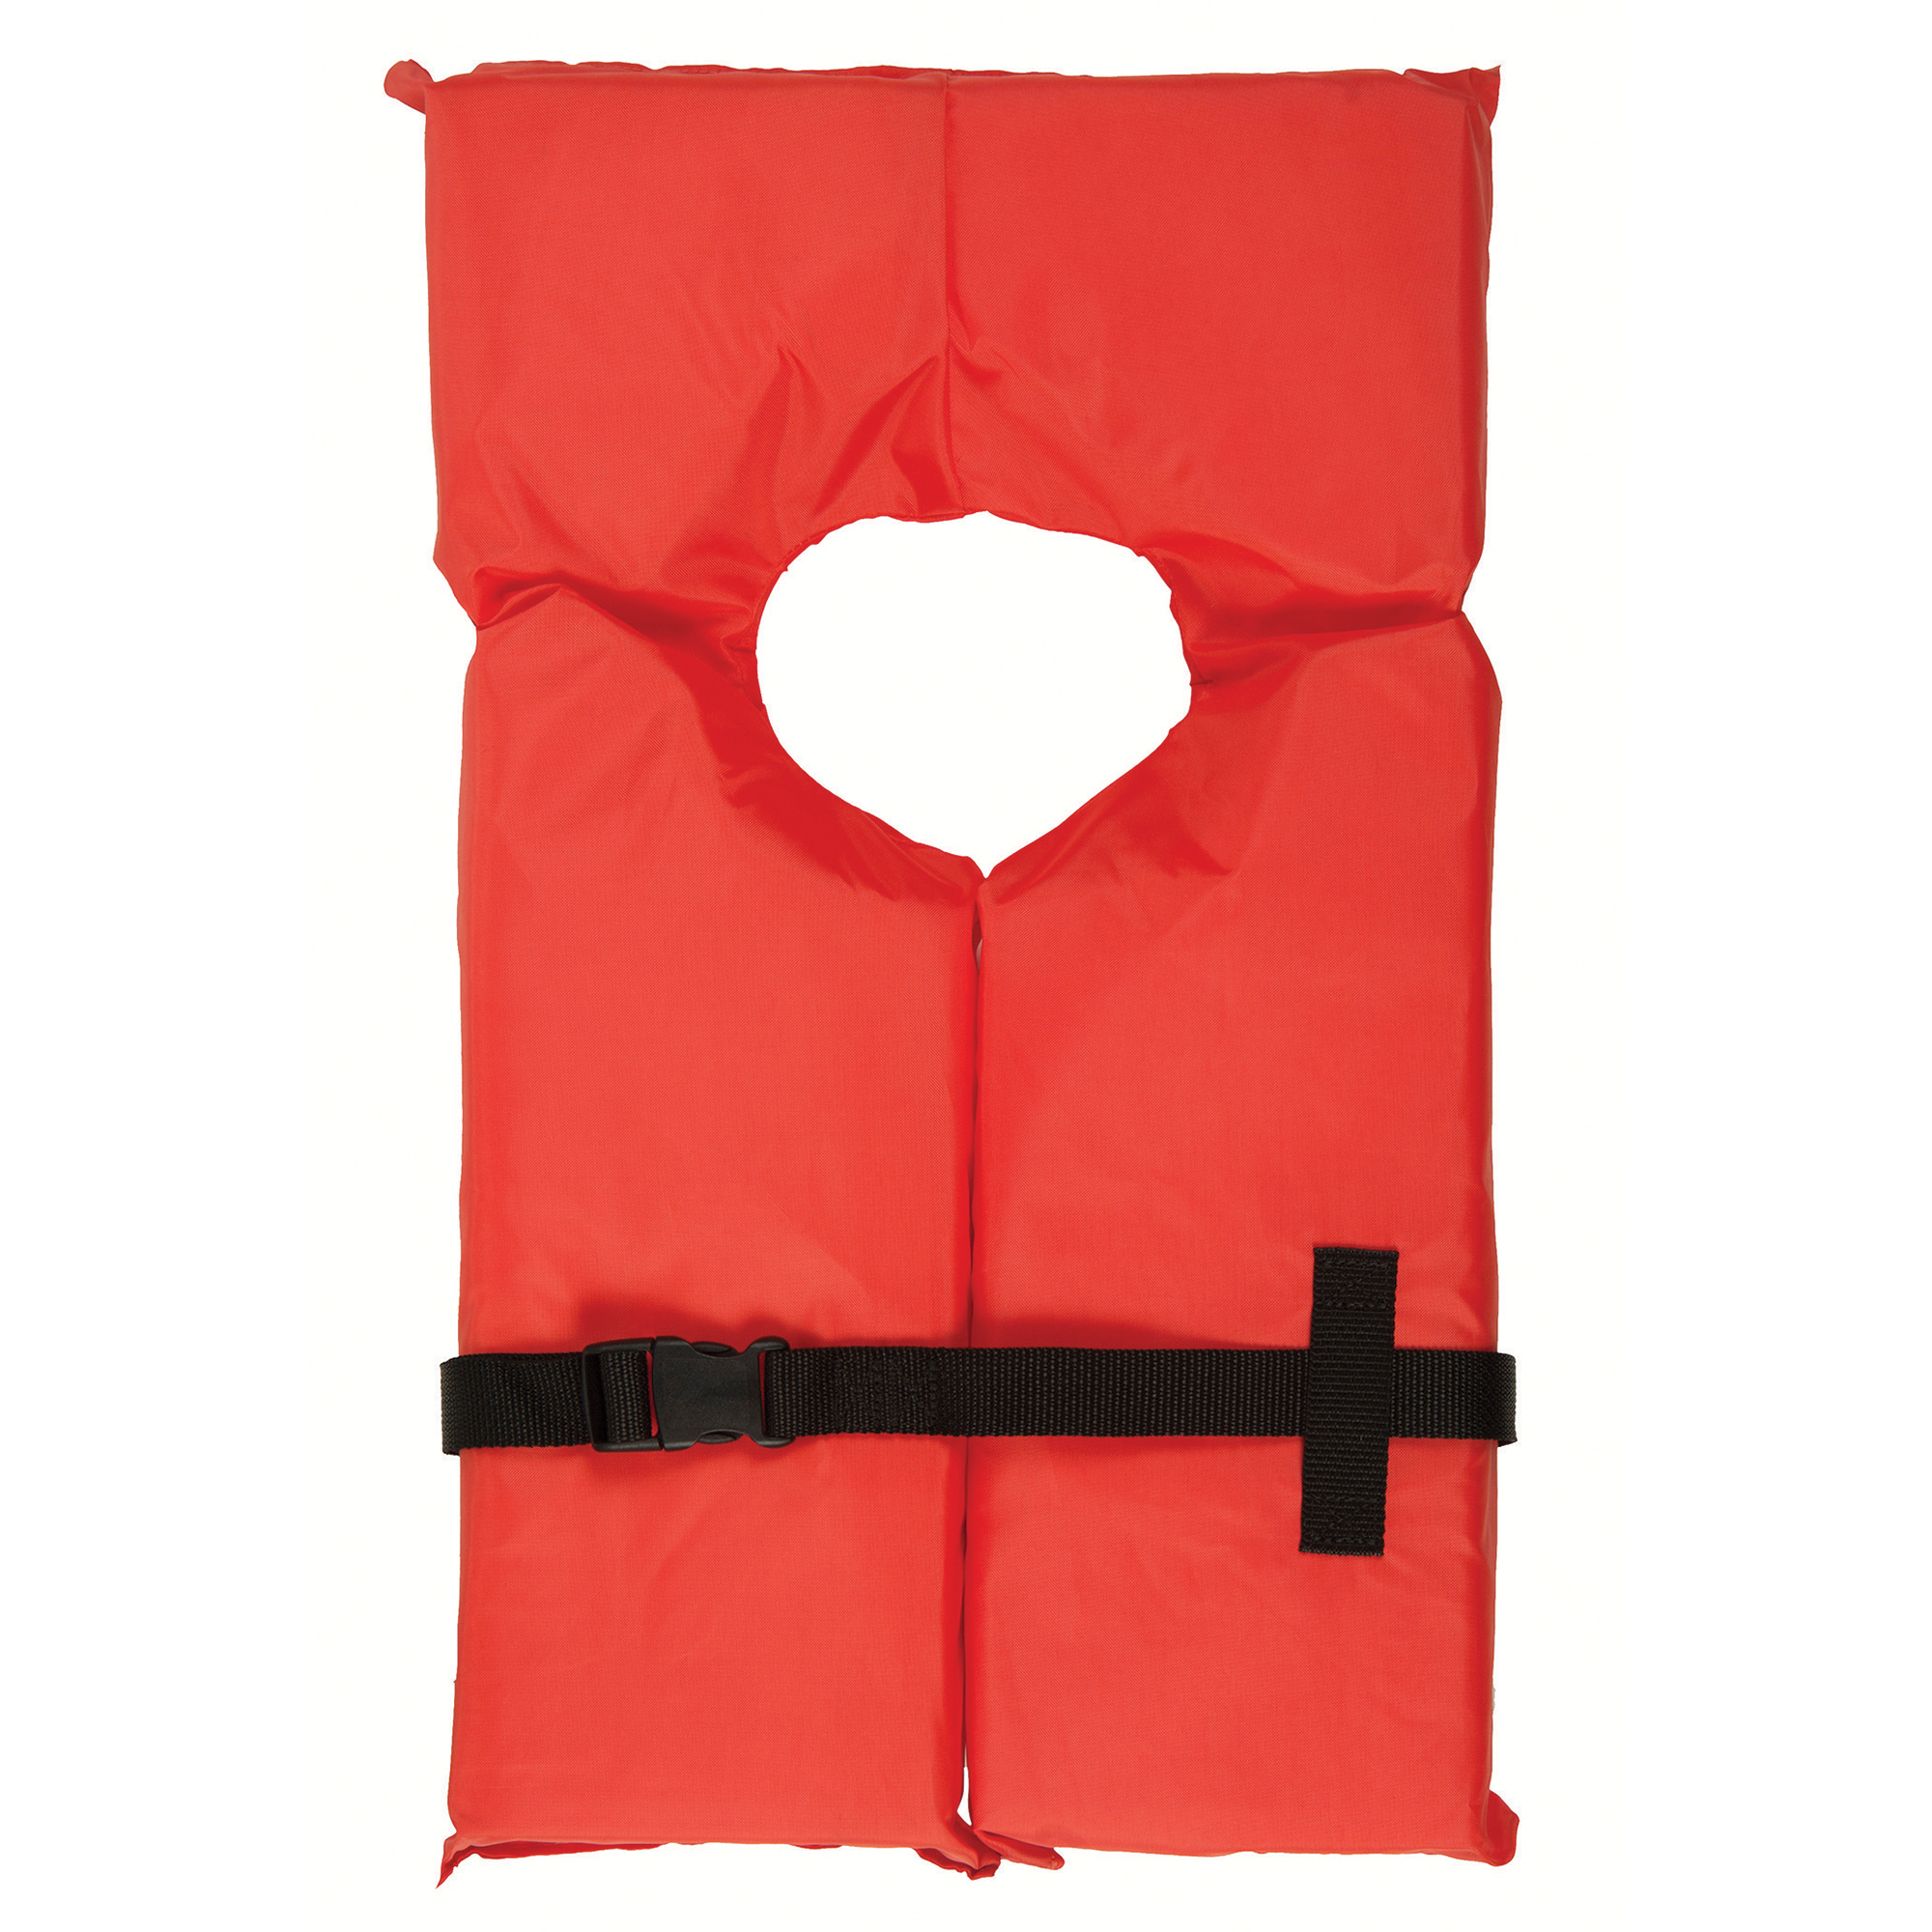 Life Jacket Storage Bag and 5 Adult Type II Life Vests | Overton's